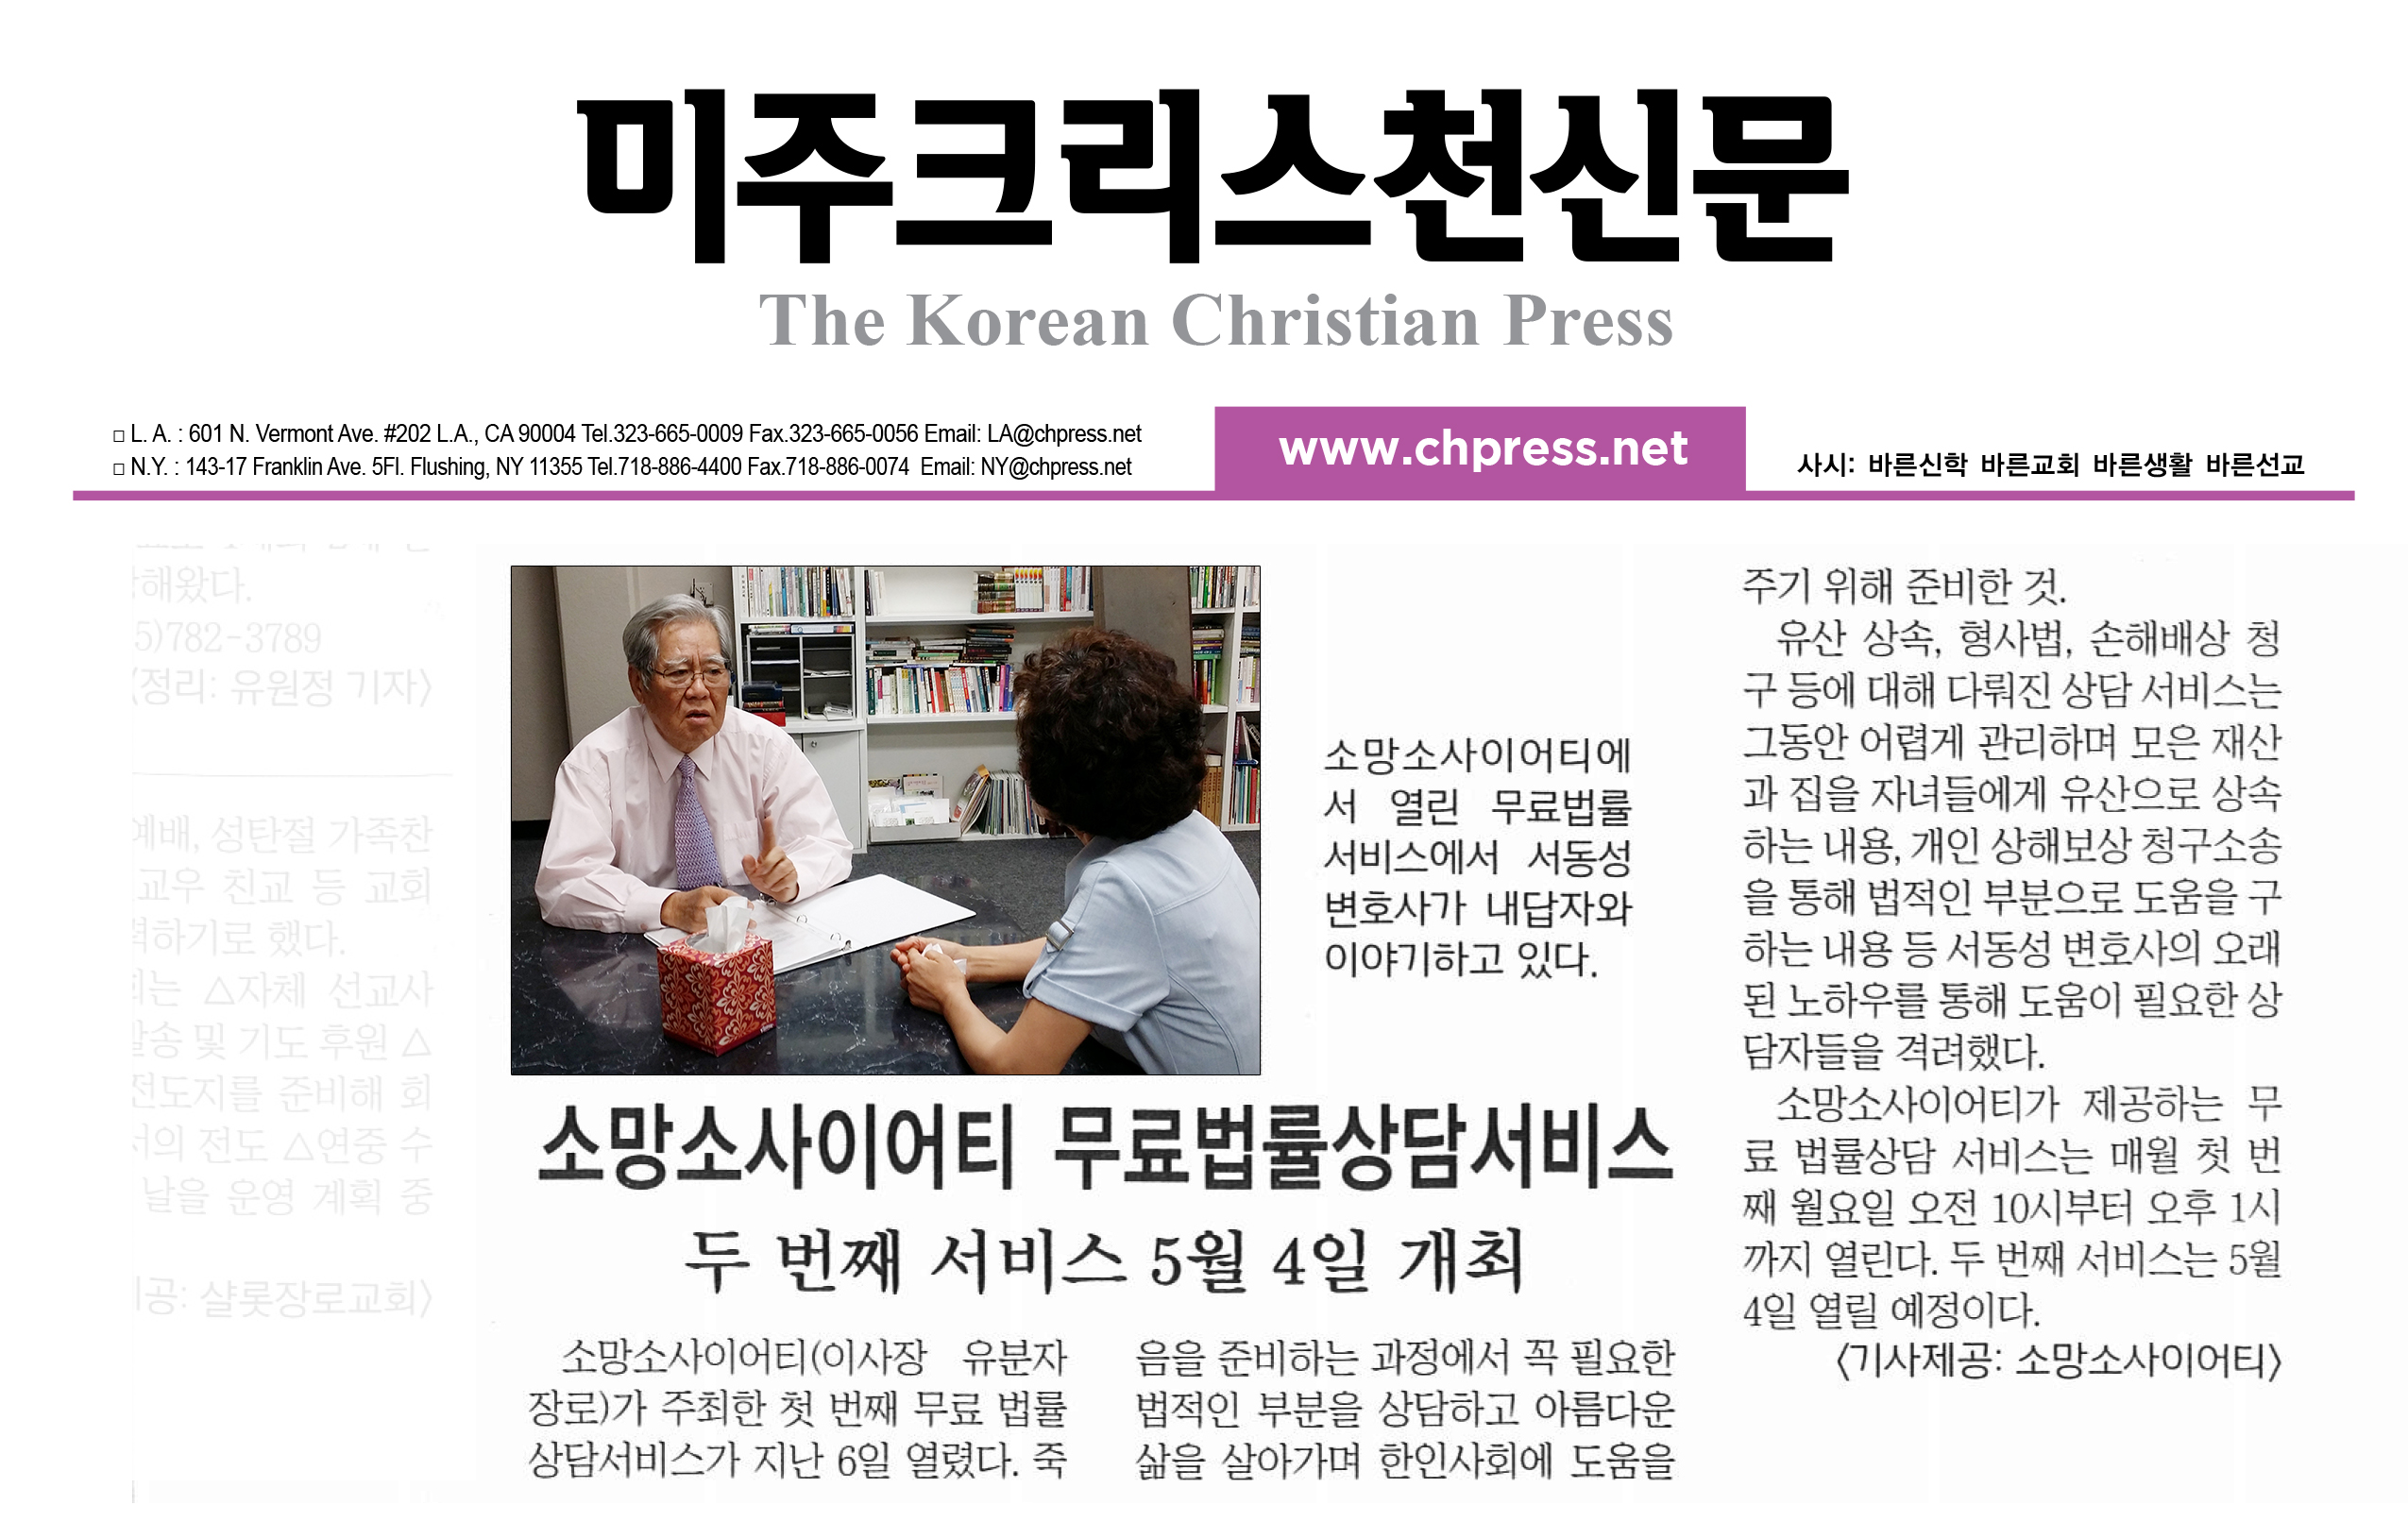 “소망소사이어티 무료법률상담서비스” 2015년 4월 25일 미주 크리스천 신문